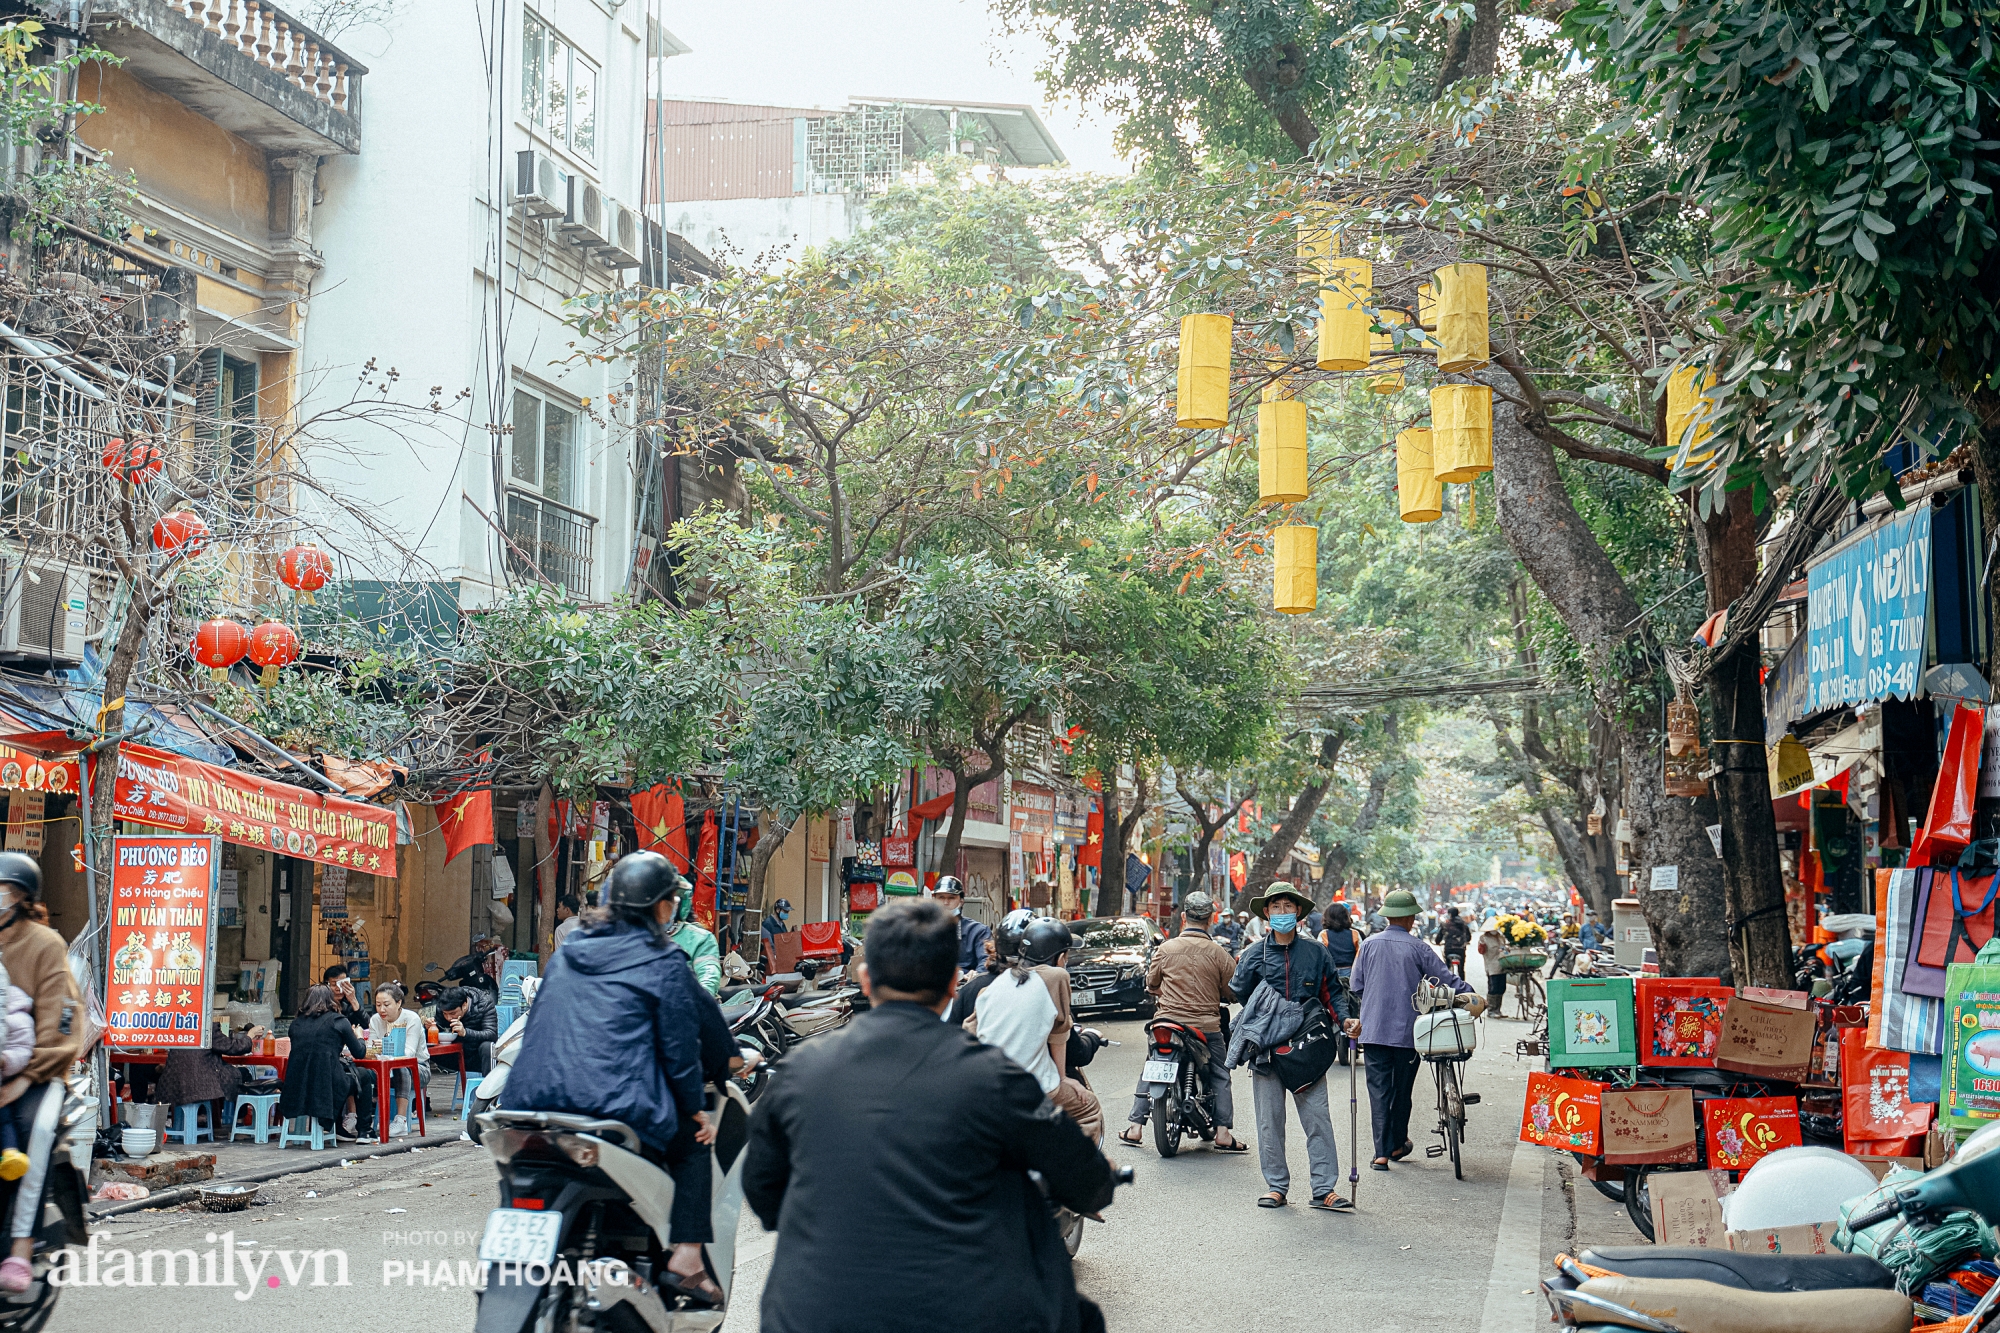 Ngày cuối năm bình yên trong ngõ chợ Thanh Hà - ngôi chợ lâu đời nhất phố cổ được giới nhà giàu chuộng mua vì toàn đồ chất lượng tươi ngon